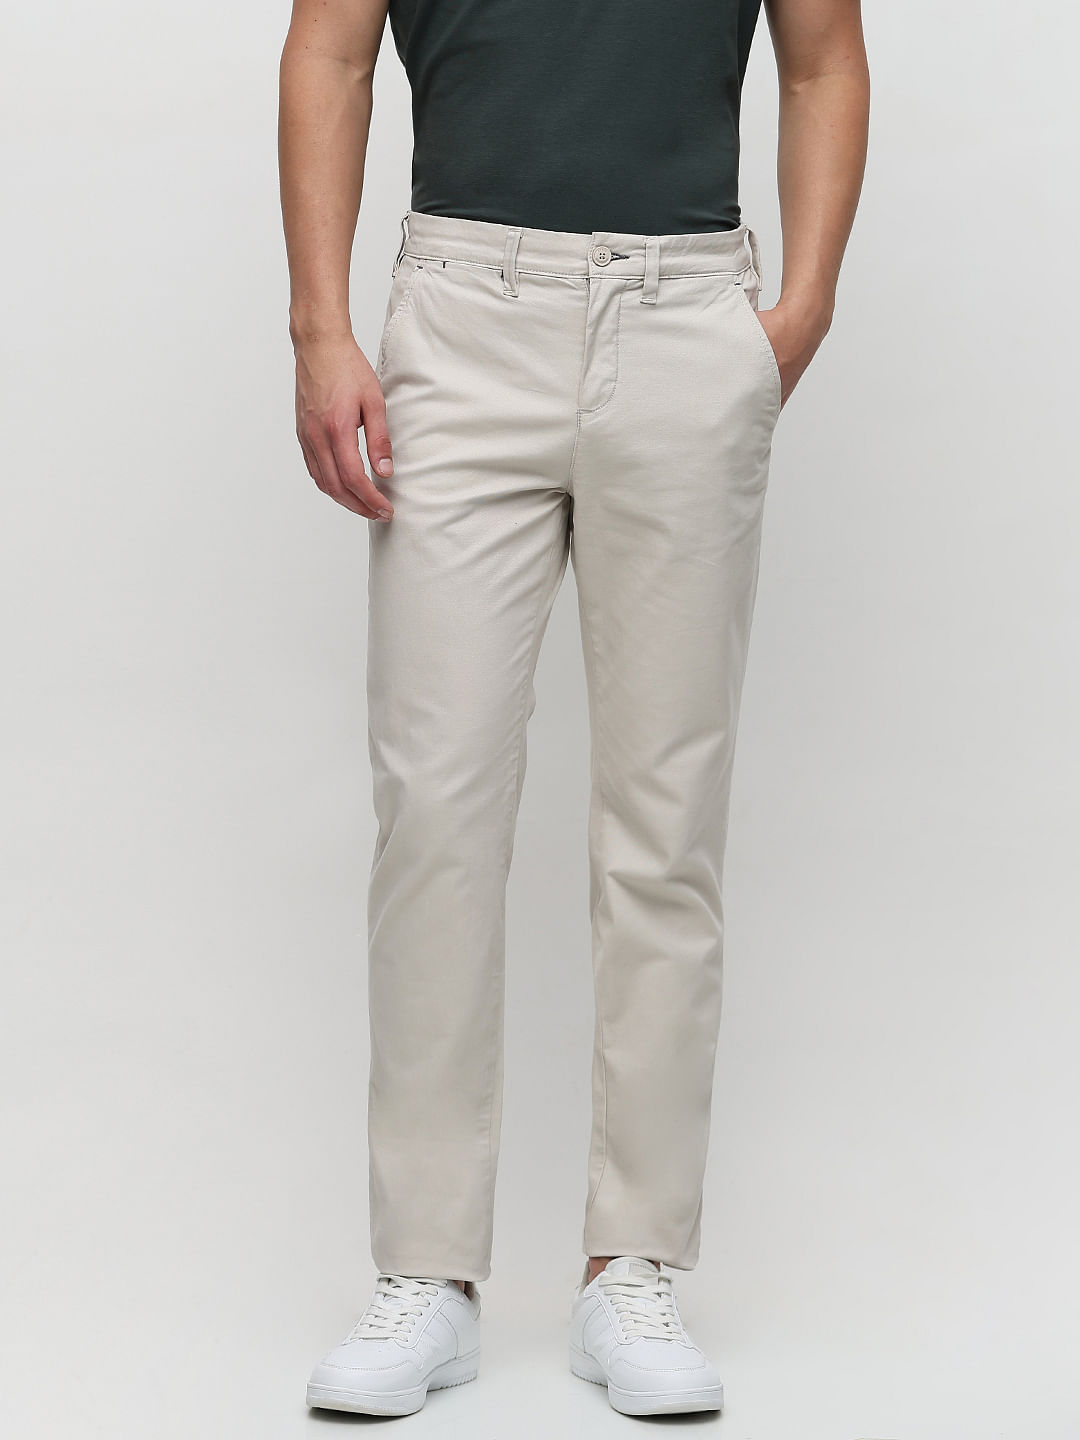 White Pants For Men Fashion Men Casual Work Cotton Blend Pure Elastic Waist  Long Pants Trousers - Walmart.com